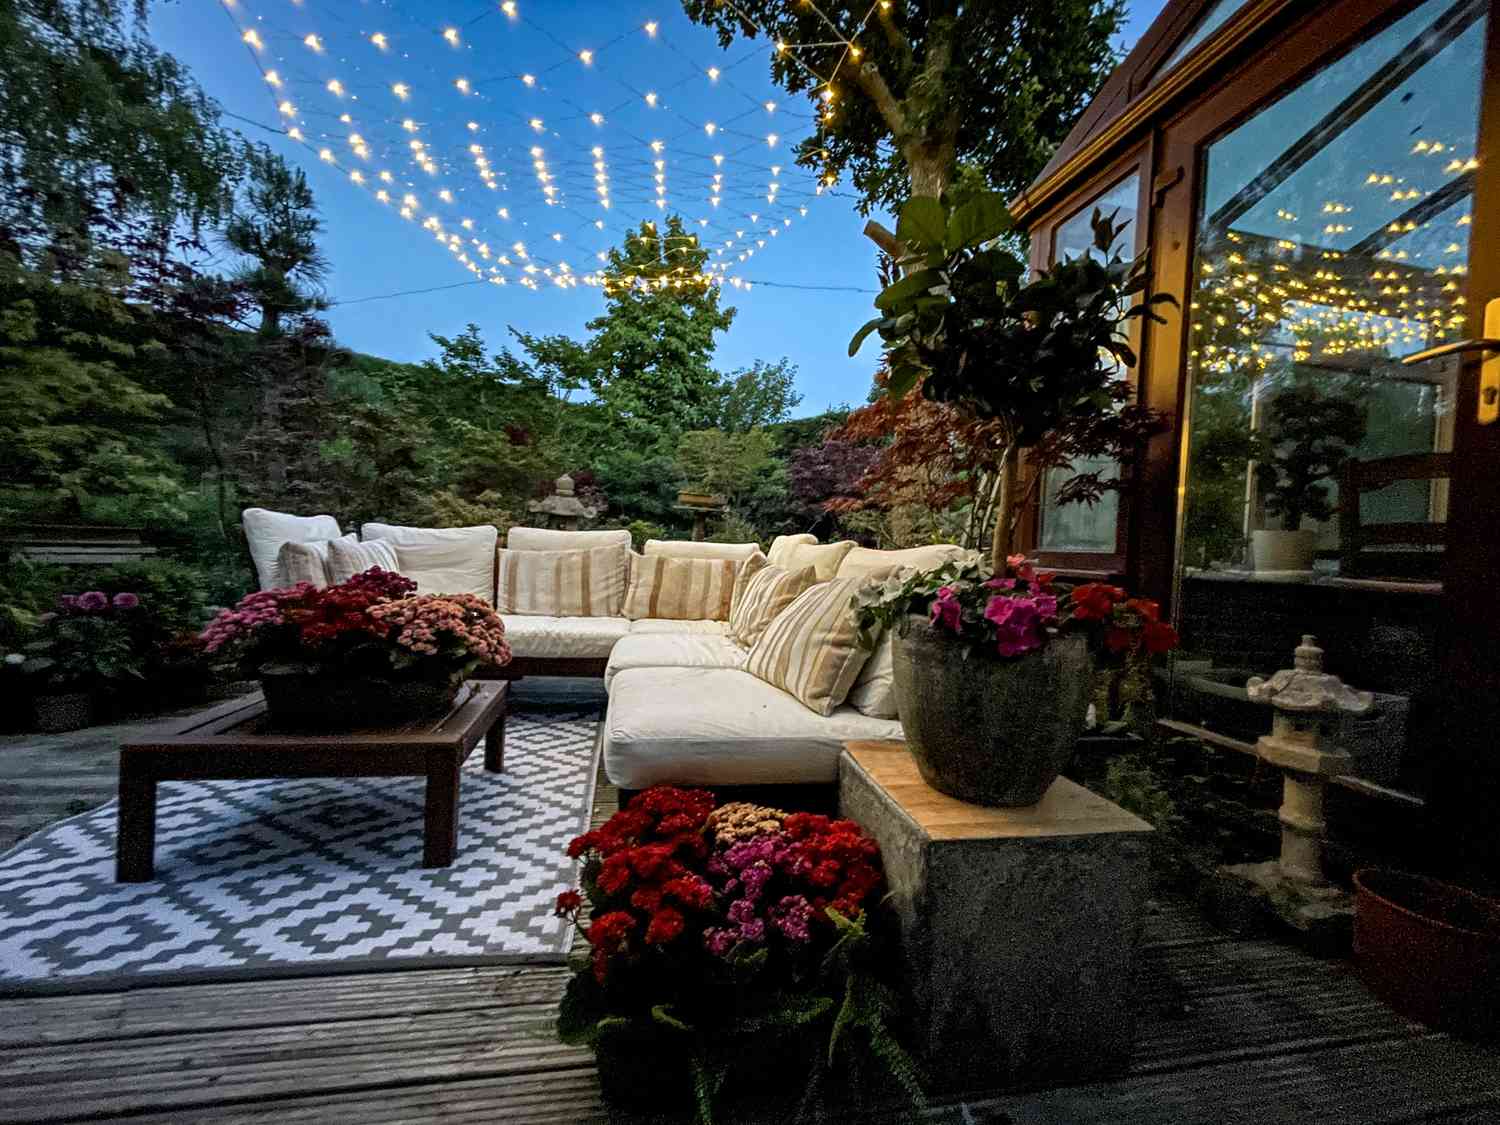 Terrassenbestuhlung mit Lichterketten